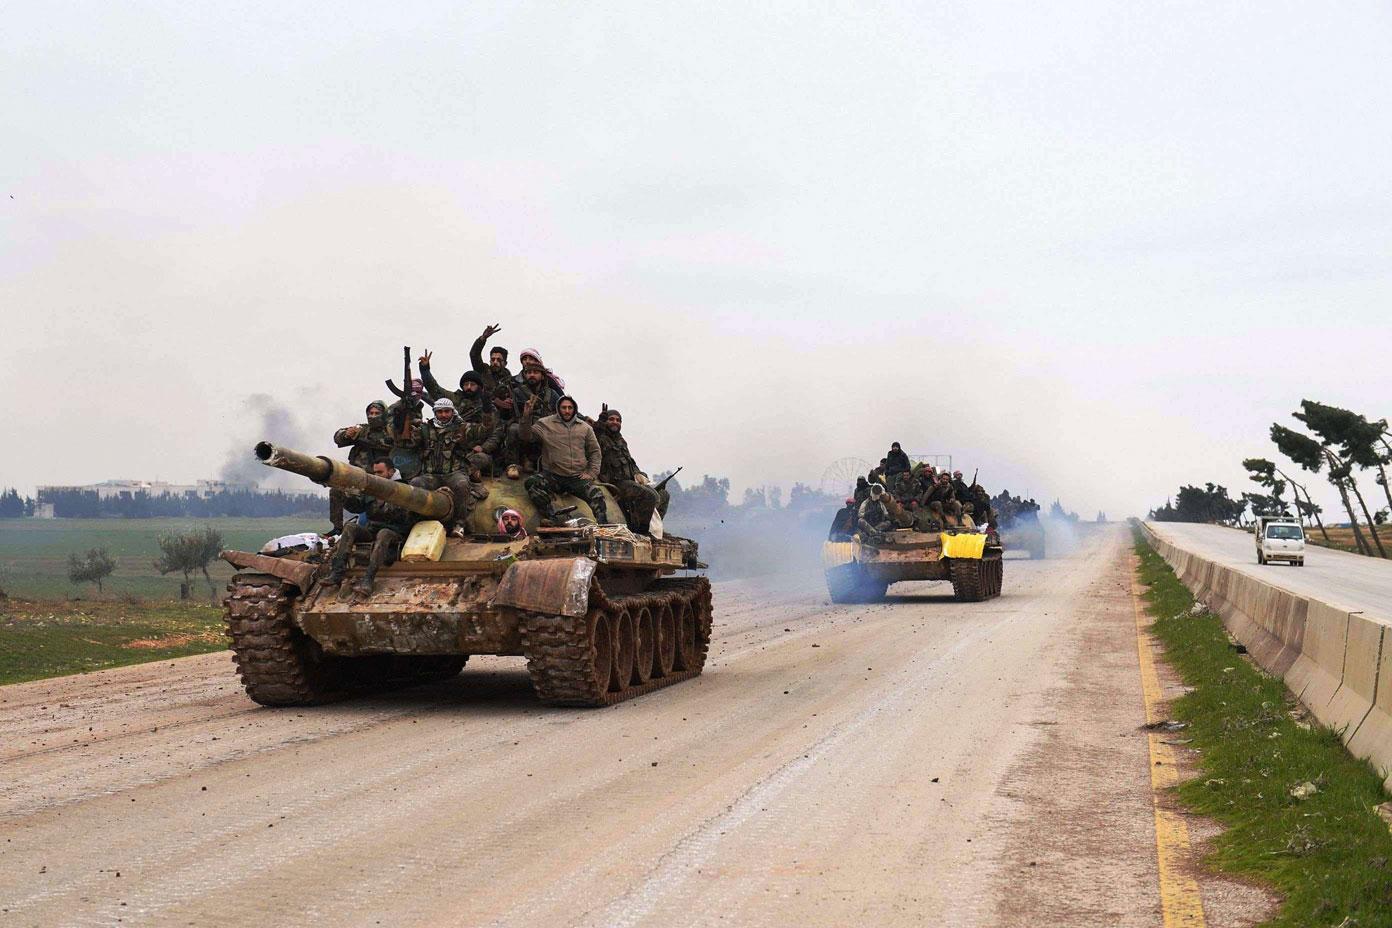 انتصارات ميدانية للجيش السوري تتقدم جهود لاعادات العلاقات الطبيعية مع عدد من الدول العربية